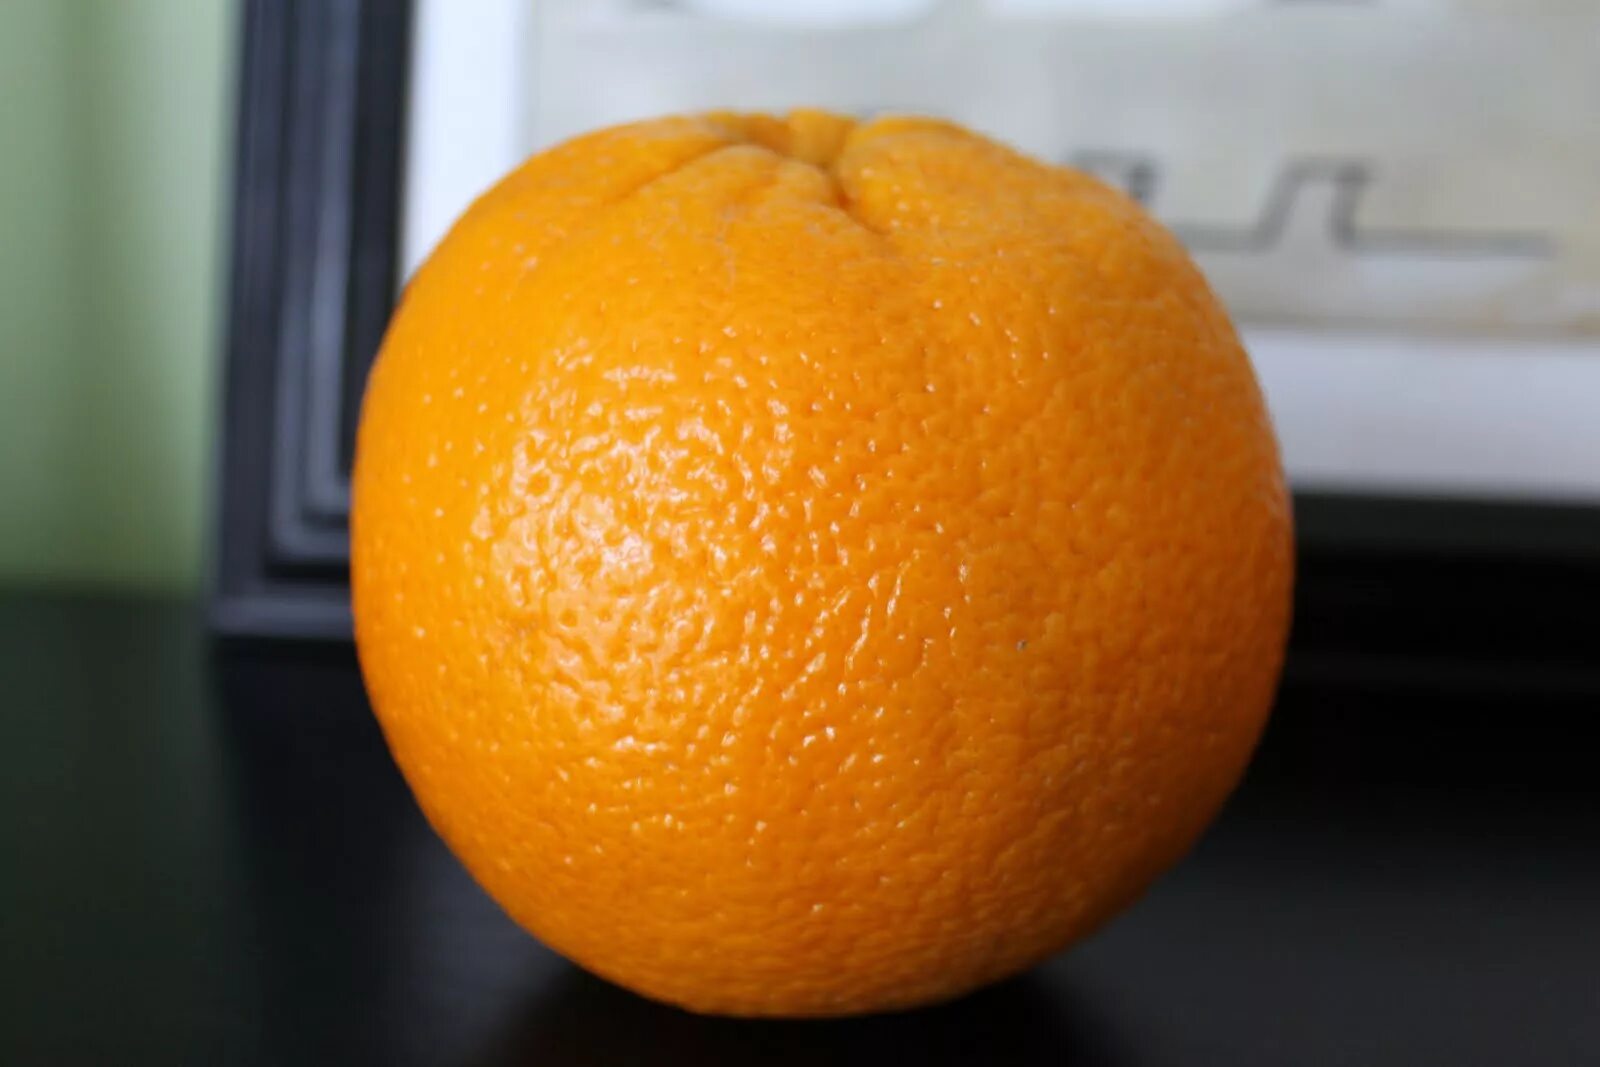 Apelsin 1:1. Мандарин померанец. Мандарины Минеола. Большой апельсин. Orange choose